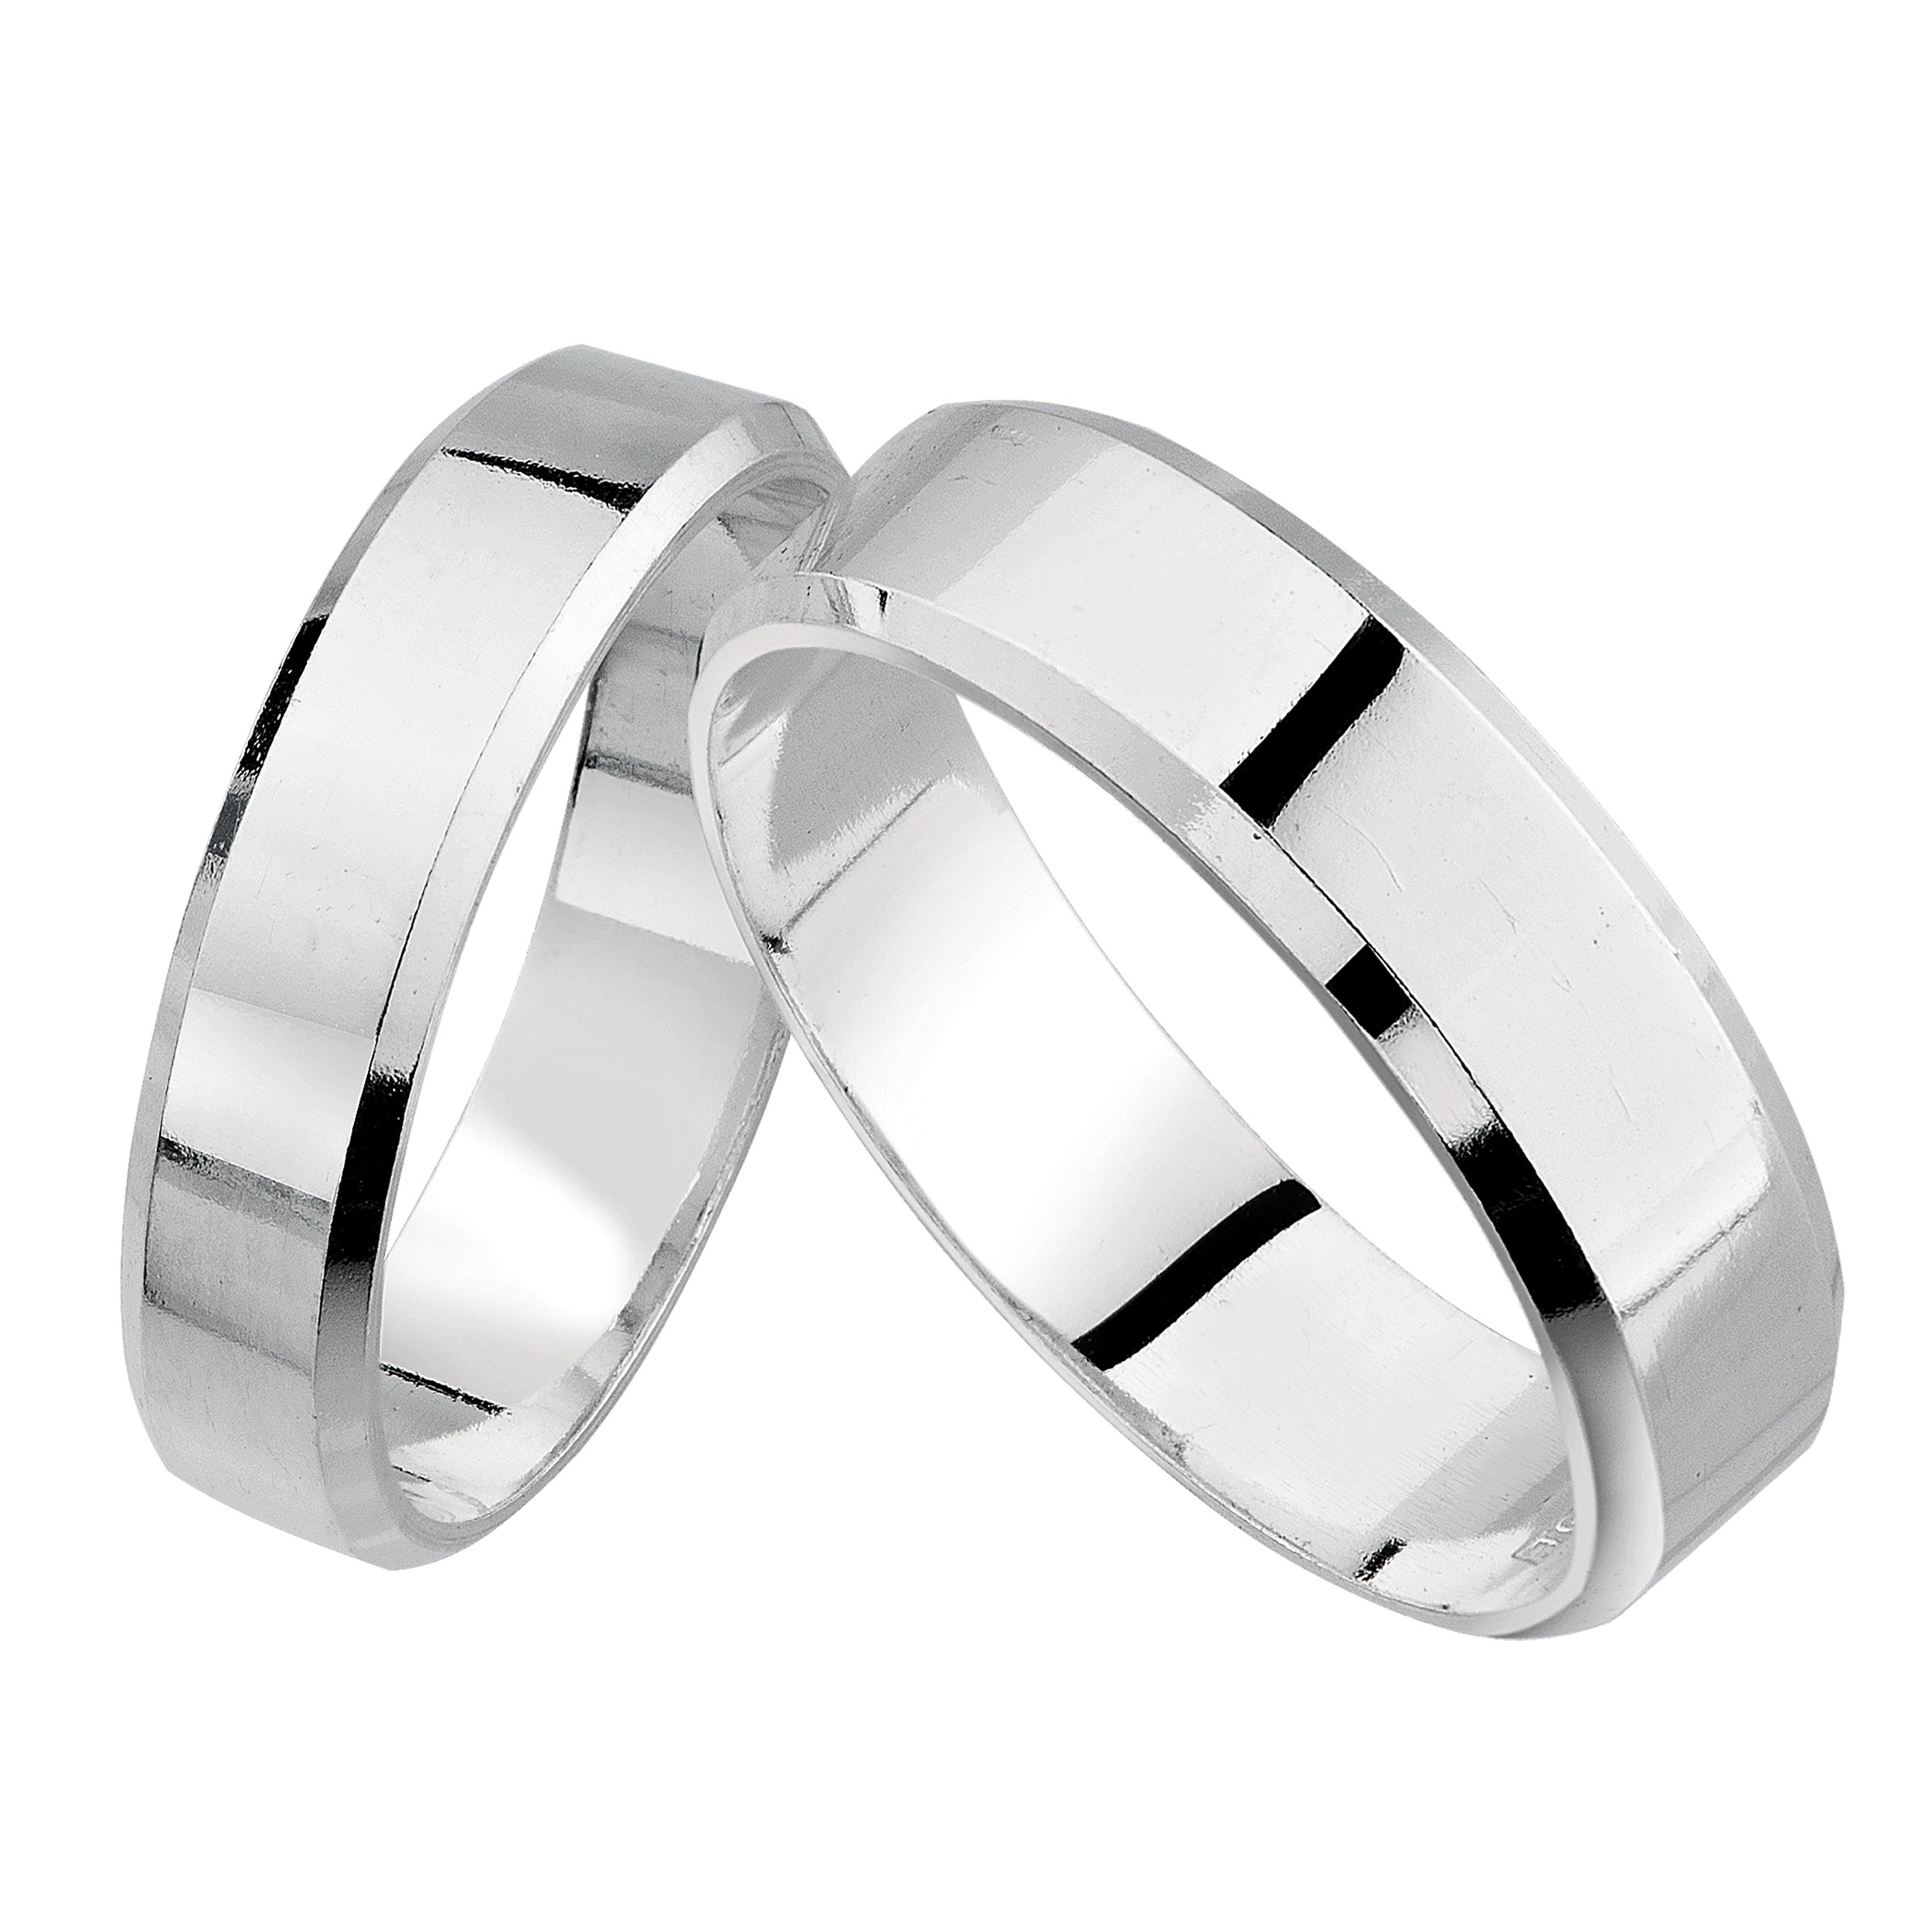 Можно обручальное кольцо серебряное. SEREBRO 925 Kolca обручальные. Серебряное обручальное кольцо. Мужские обручальные кольца из серебра. Широкие серебряные обручальные кольца.